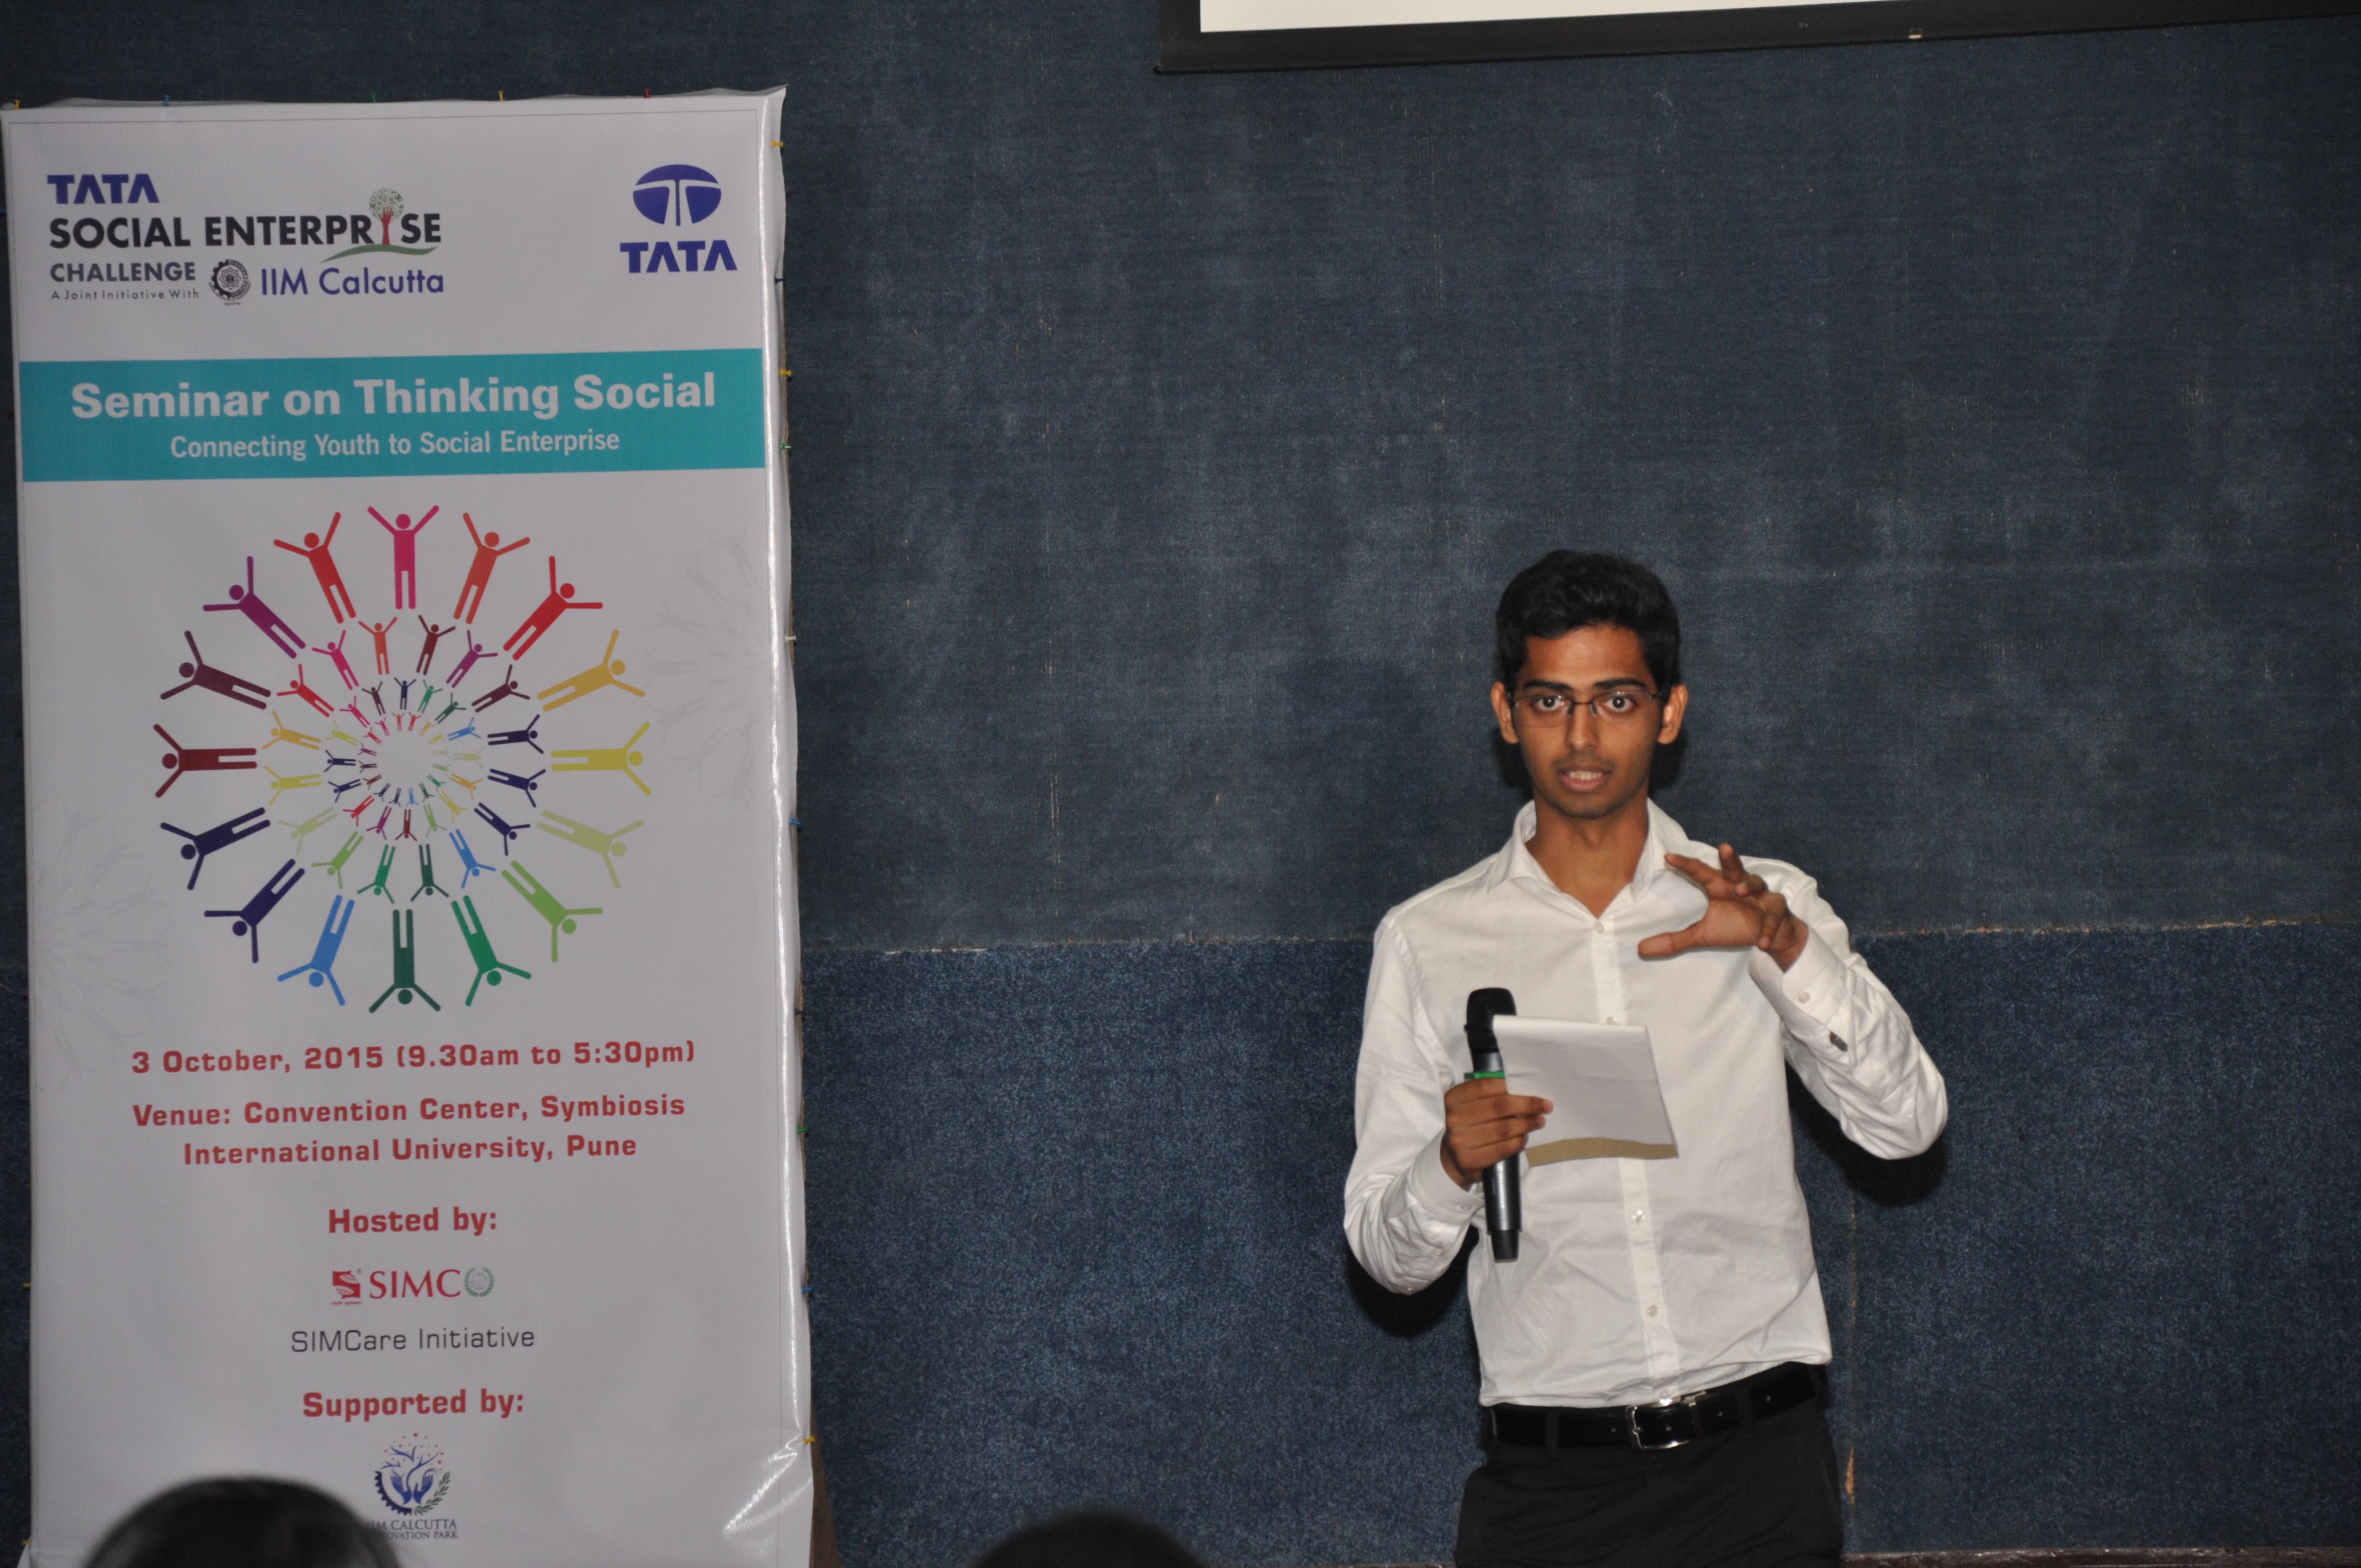 Seminar on “Thinking Social” at Pune – 3 October 2015